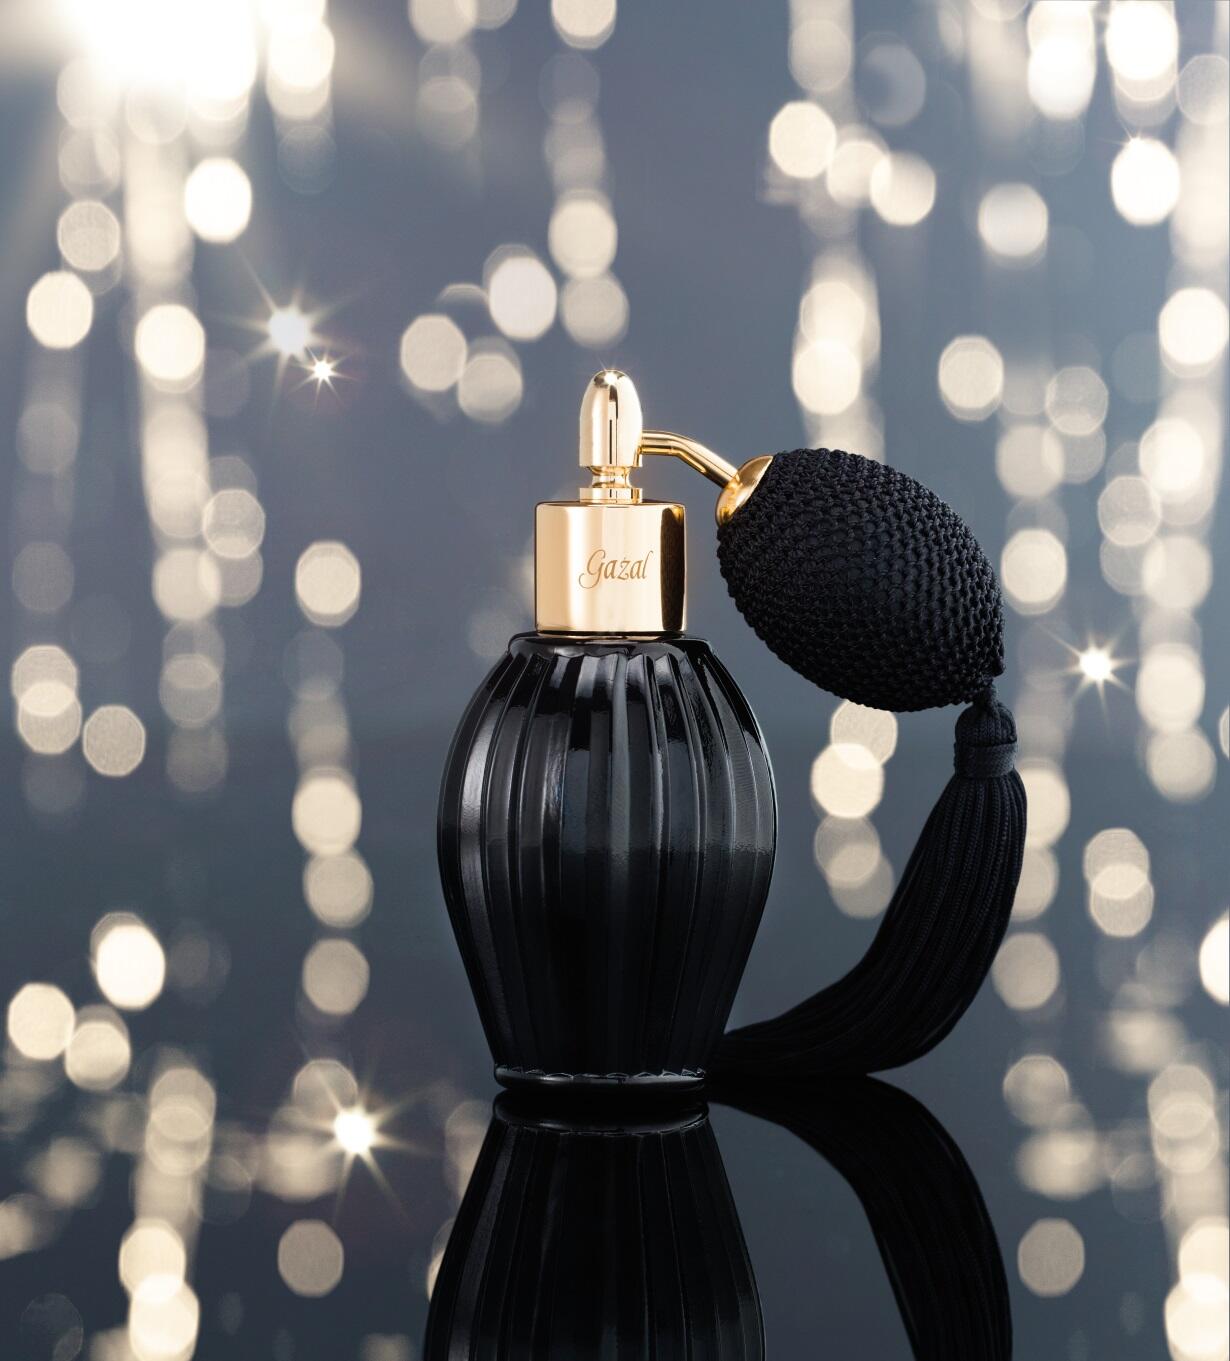 مجلة هي Twitter: غزل من #نعومي هو المفضل لدى الجميع!! Gazal fragrance #Nayomi is simply everybody's favorite #perfume !! http://t.co/ICFrQ2Kjeq" / X